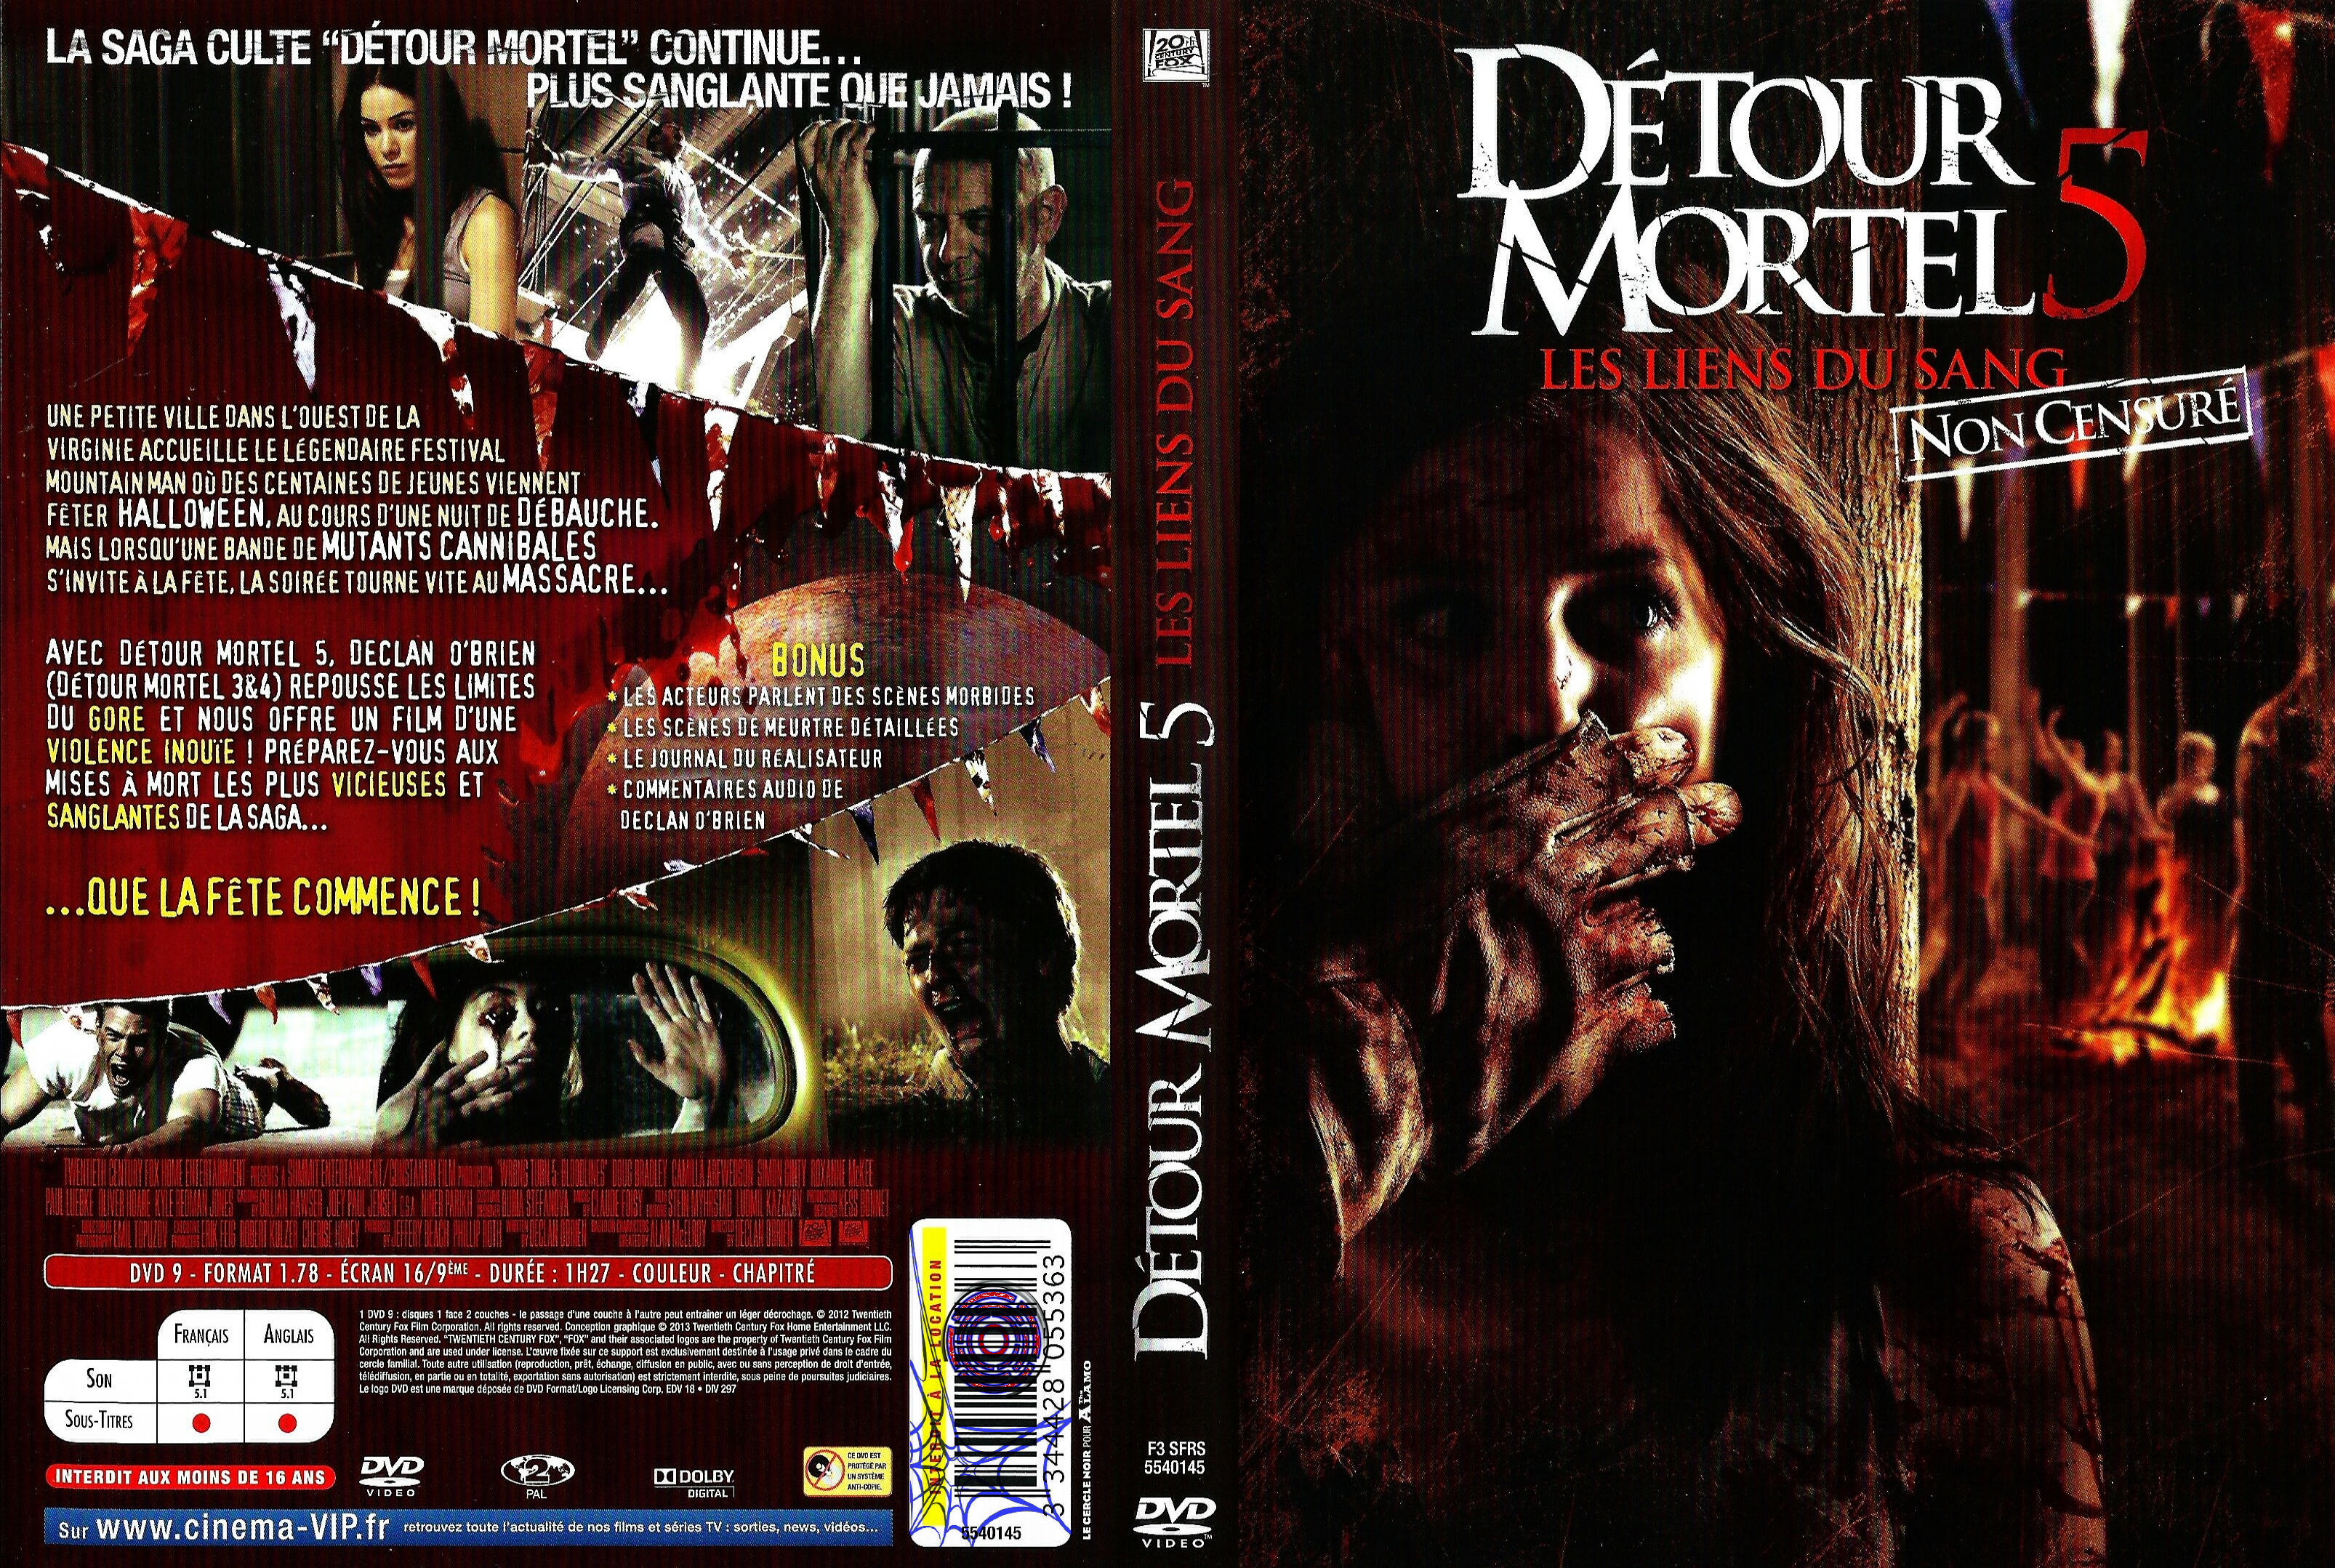 Jaquette DVD Dtour mortel 5